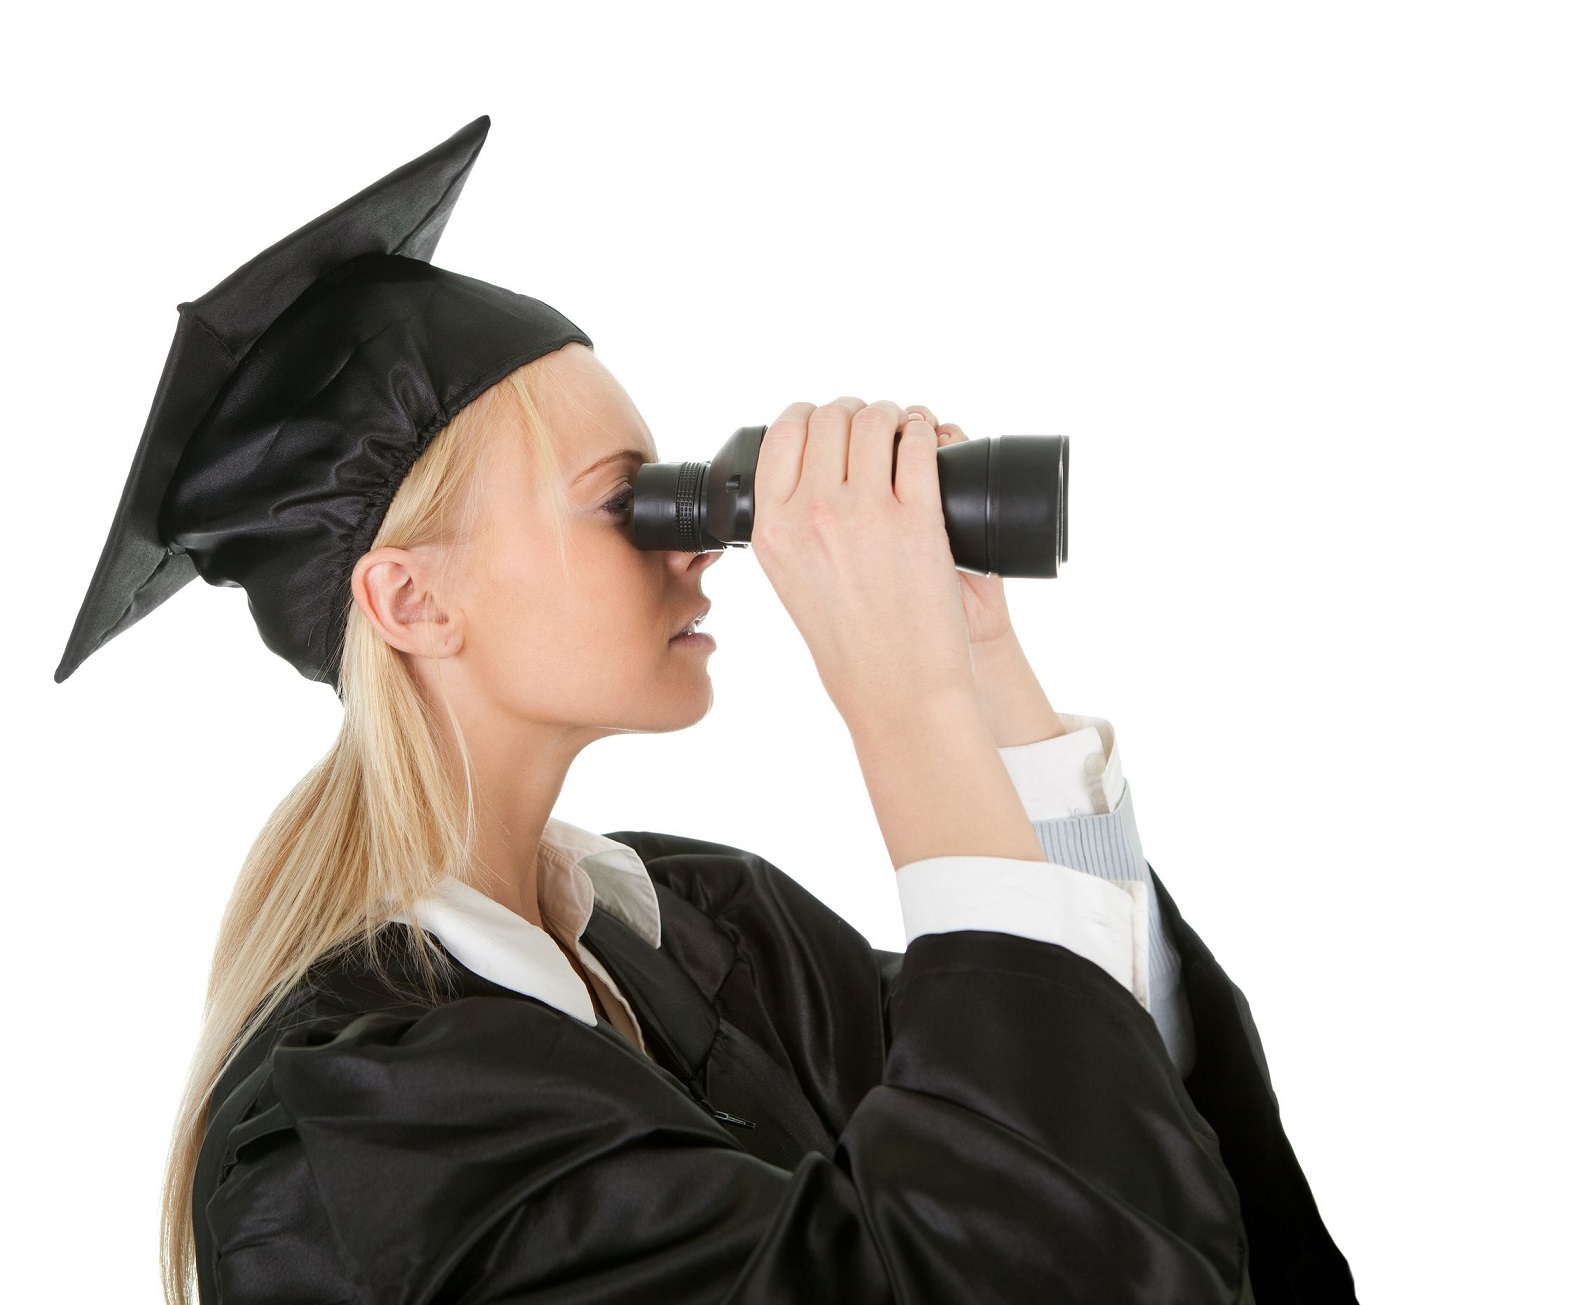 Graduate looking through binoculars